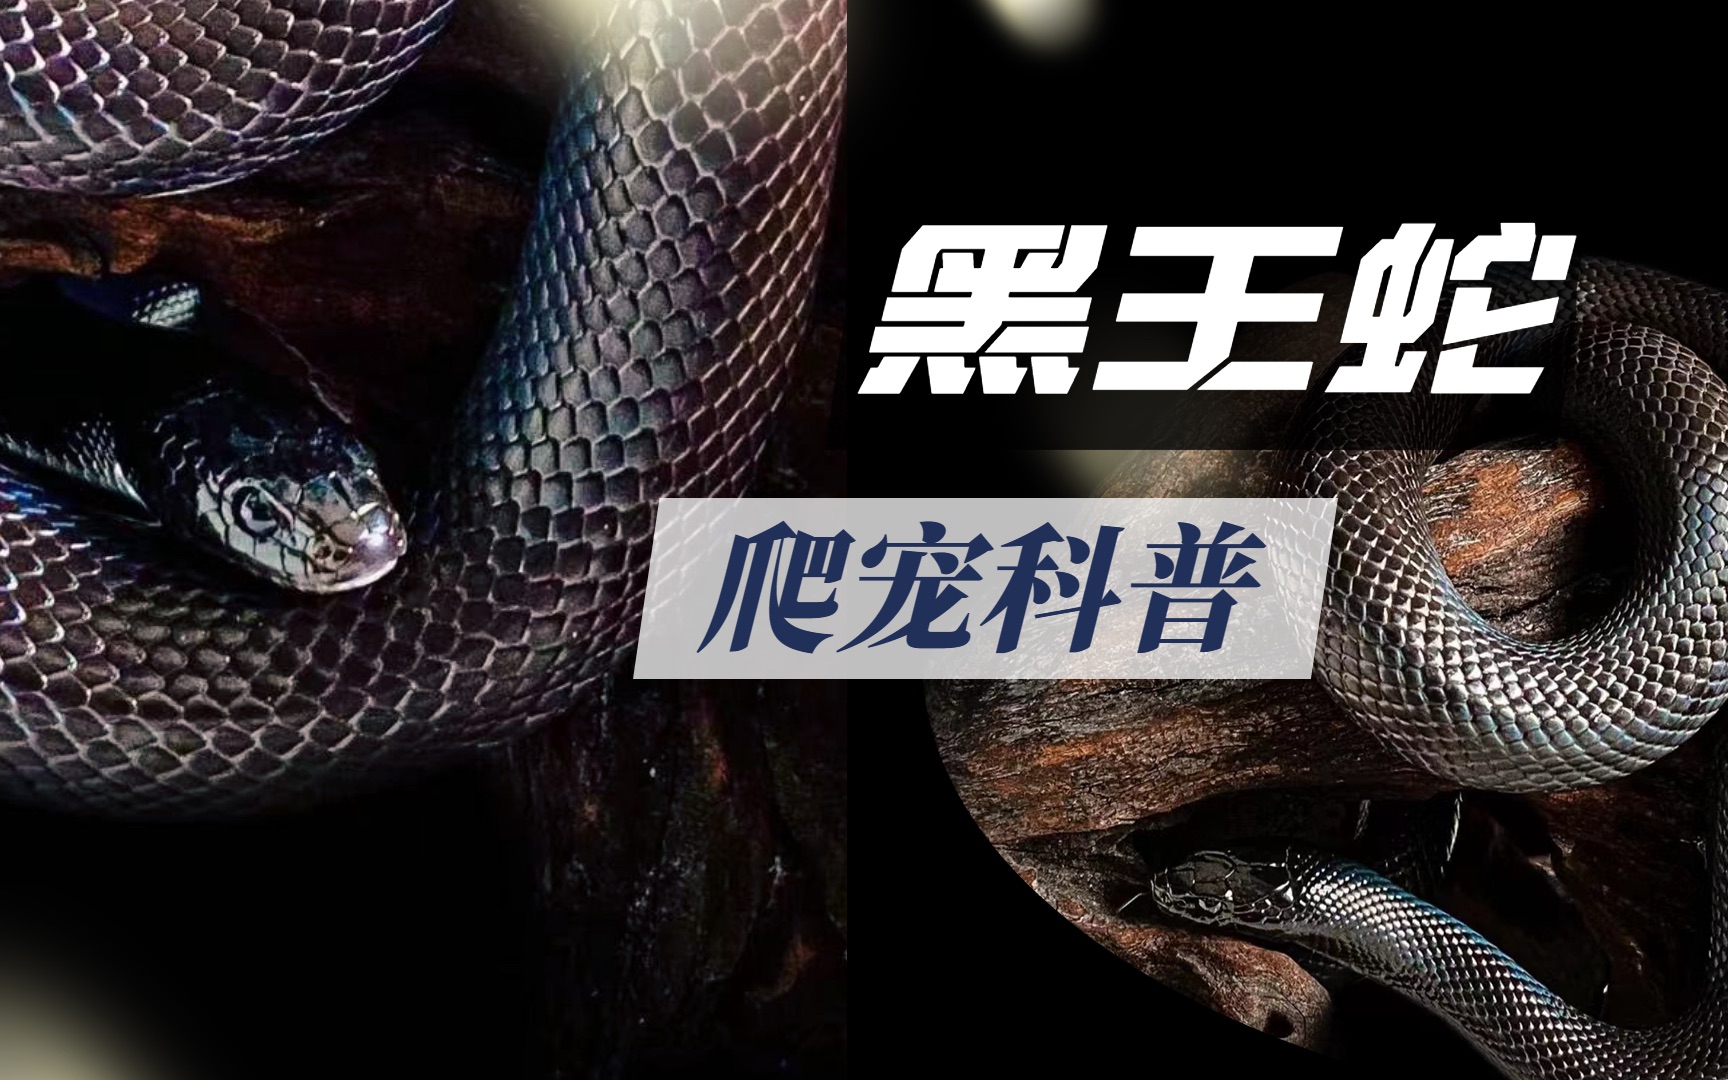 到底啥是黑王蛇？这条视频带你了解清楚！黑王蛇科普！